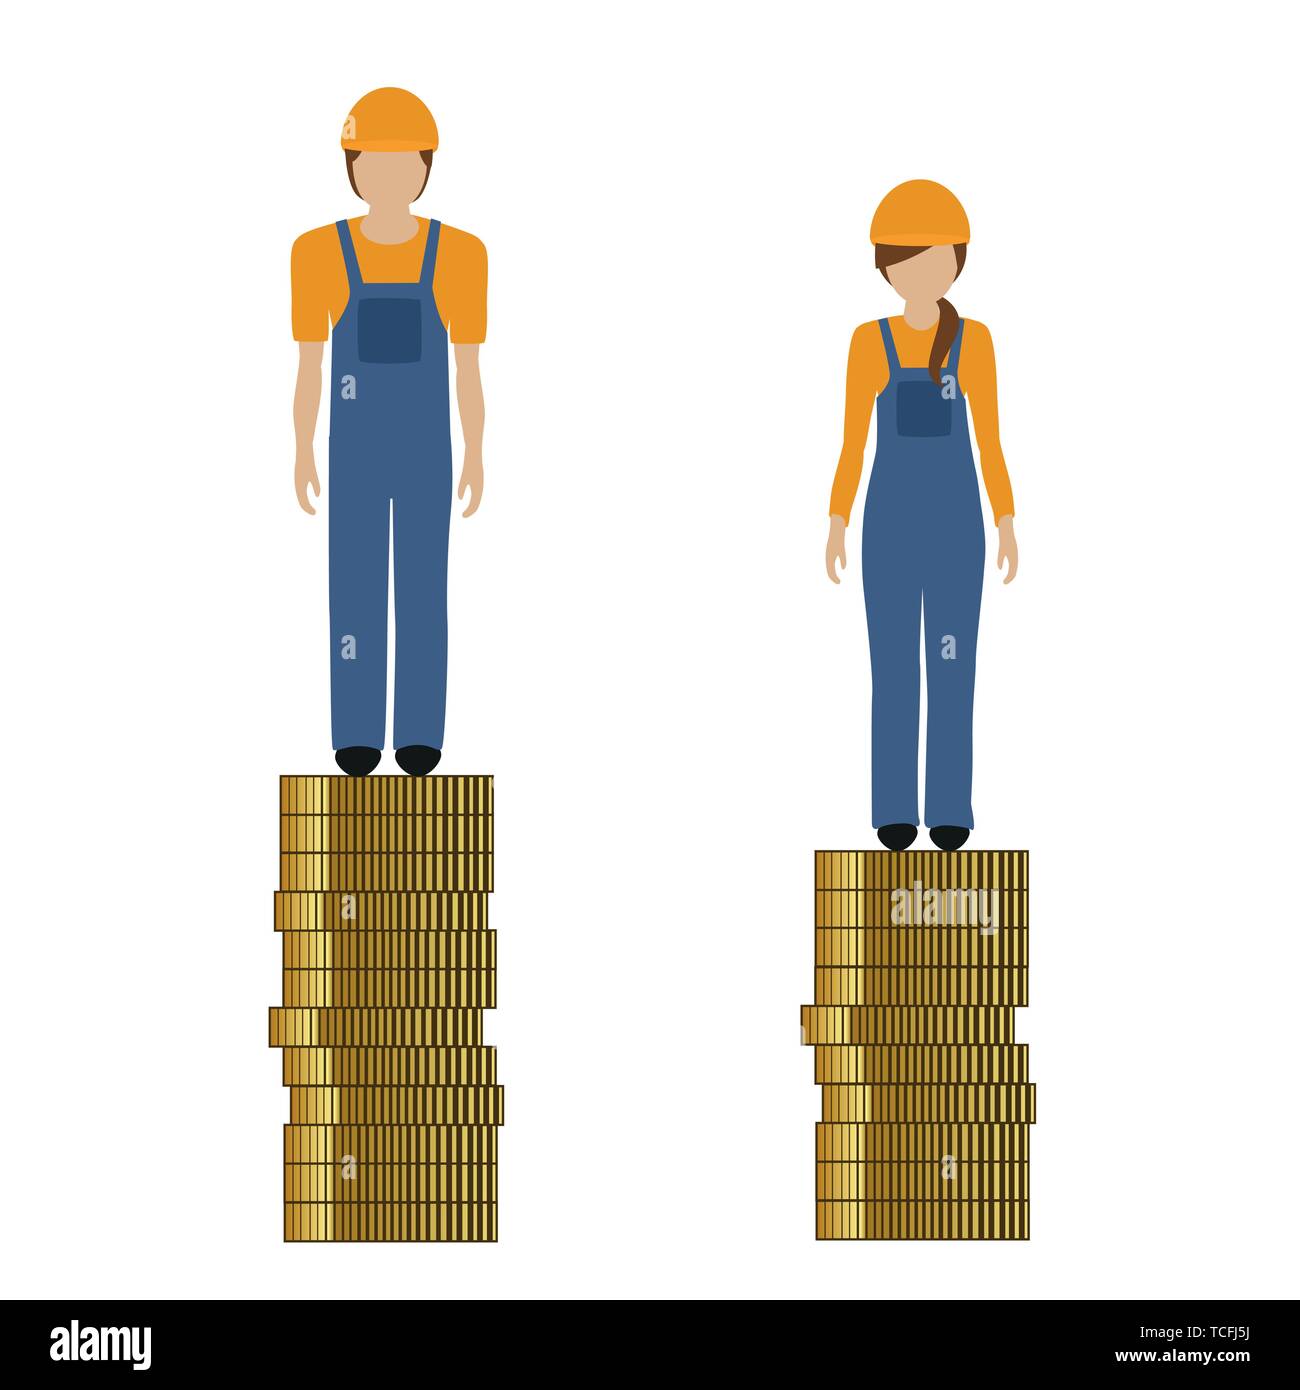 Frau verdient weniger Geld als Mann Bauarbeiter diskriminiert Vektor-illustration EPS 10. Stock Vektor